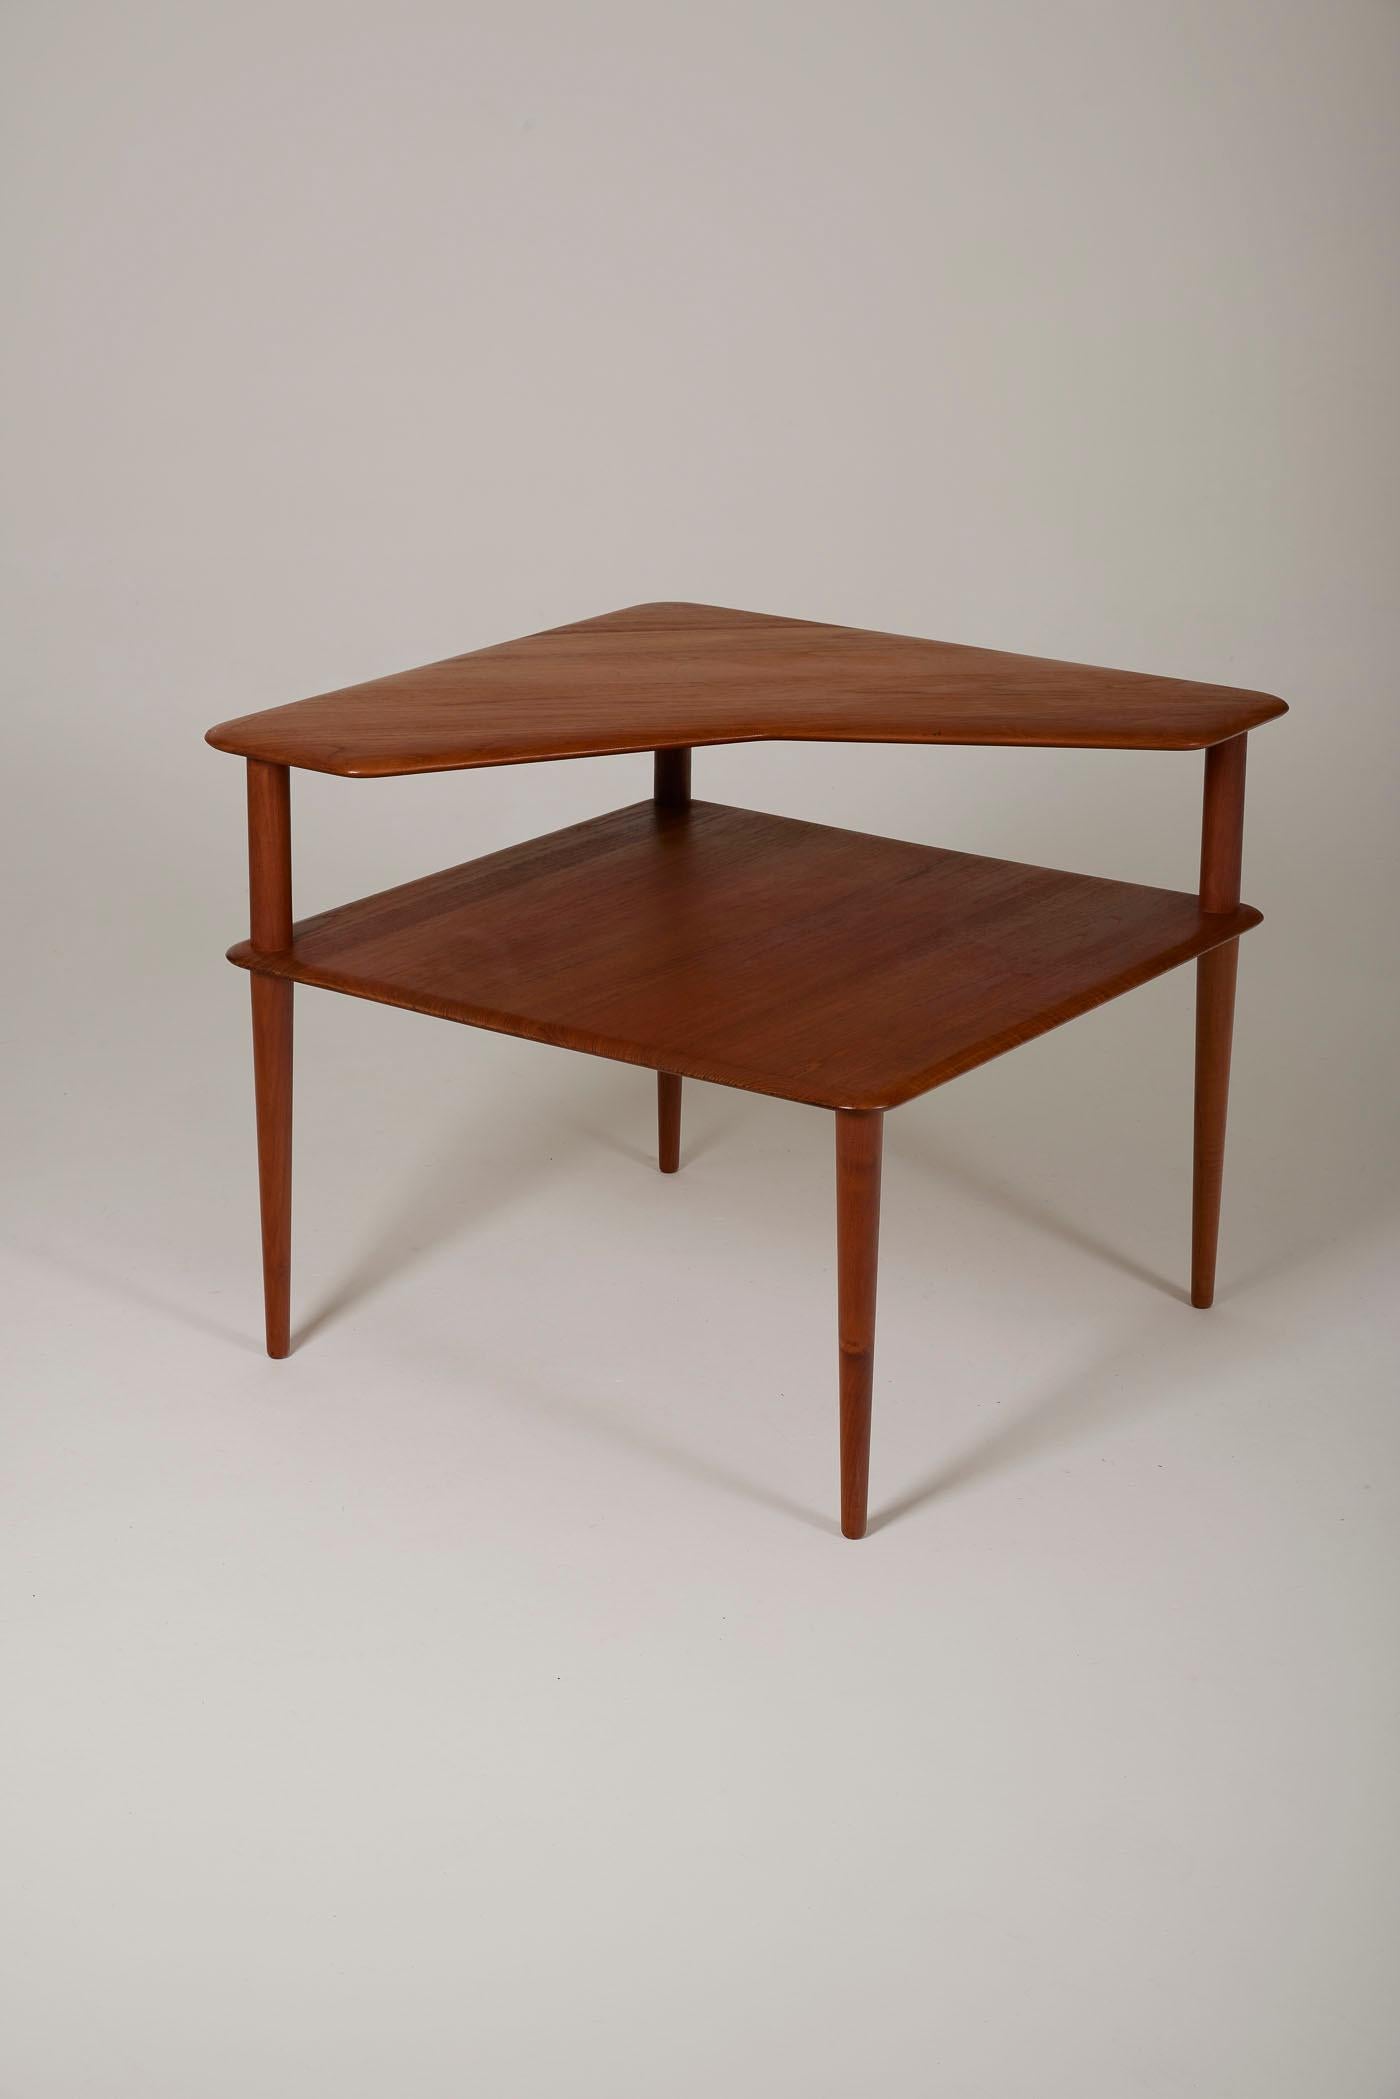 Table des designers Peter Hvidt & Orla Molgaard Nielsen pour France & Søn, années 1960. Il possède deux plateaux en teck, dont l'un est asymétrique. Idéale comme table d'appoint au coin du canapé. En parfait état.
DV452